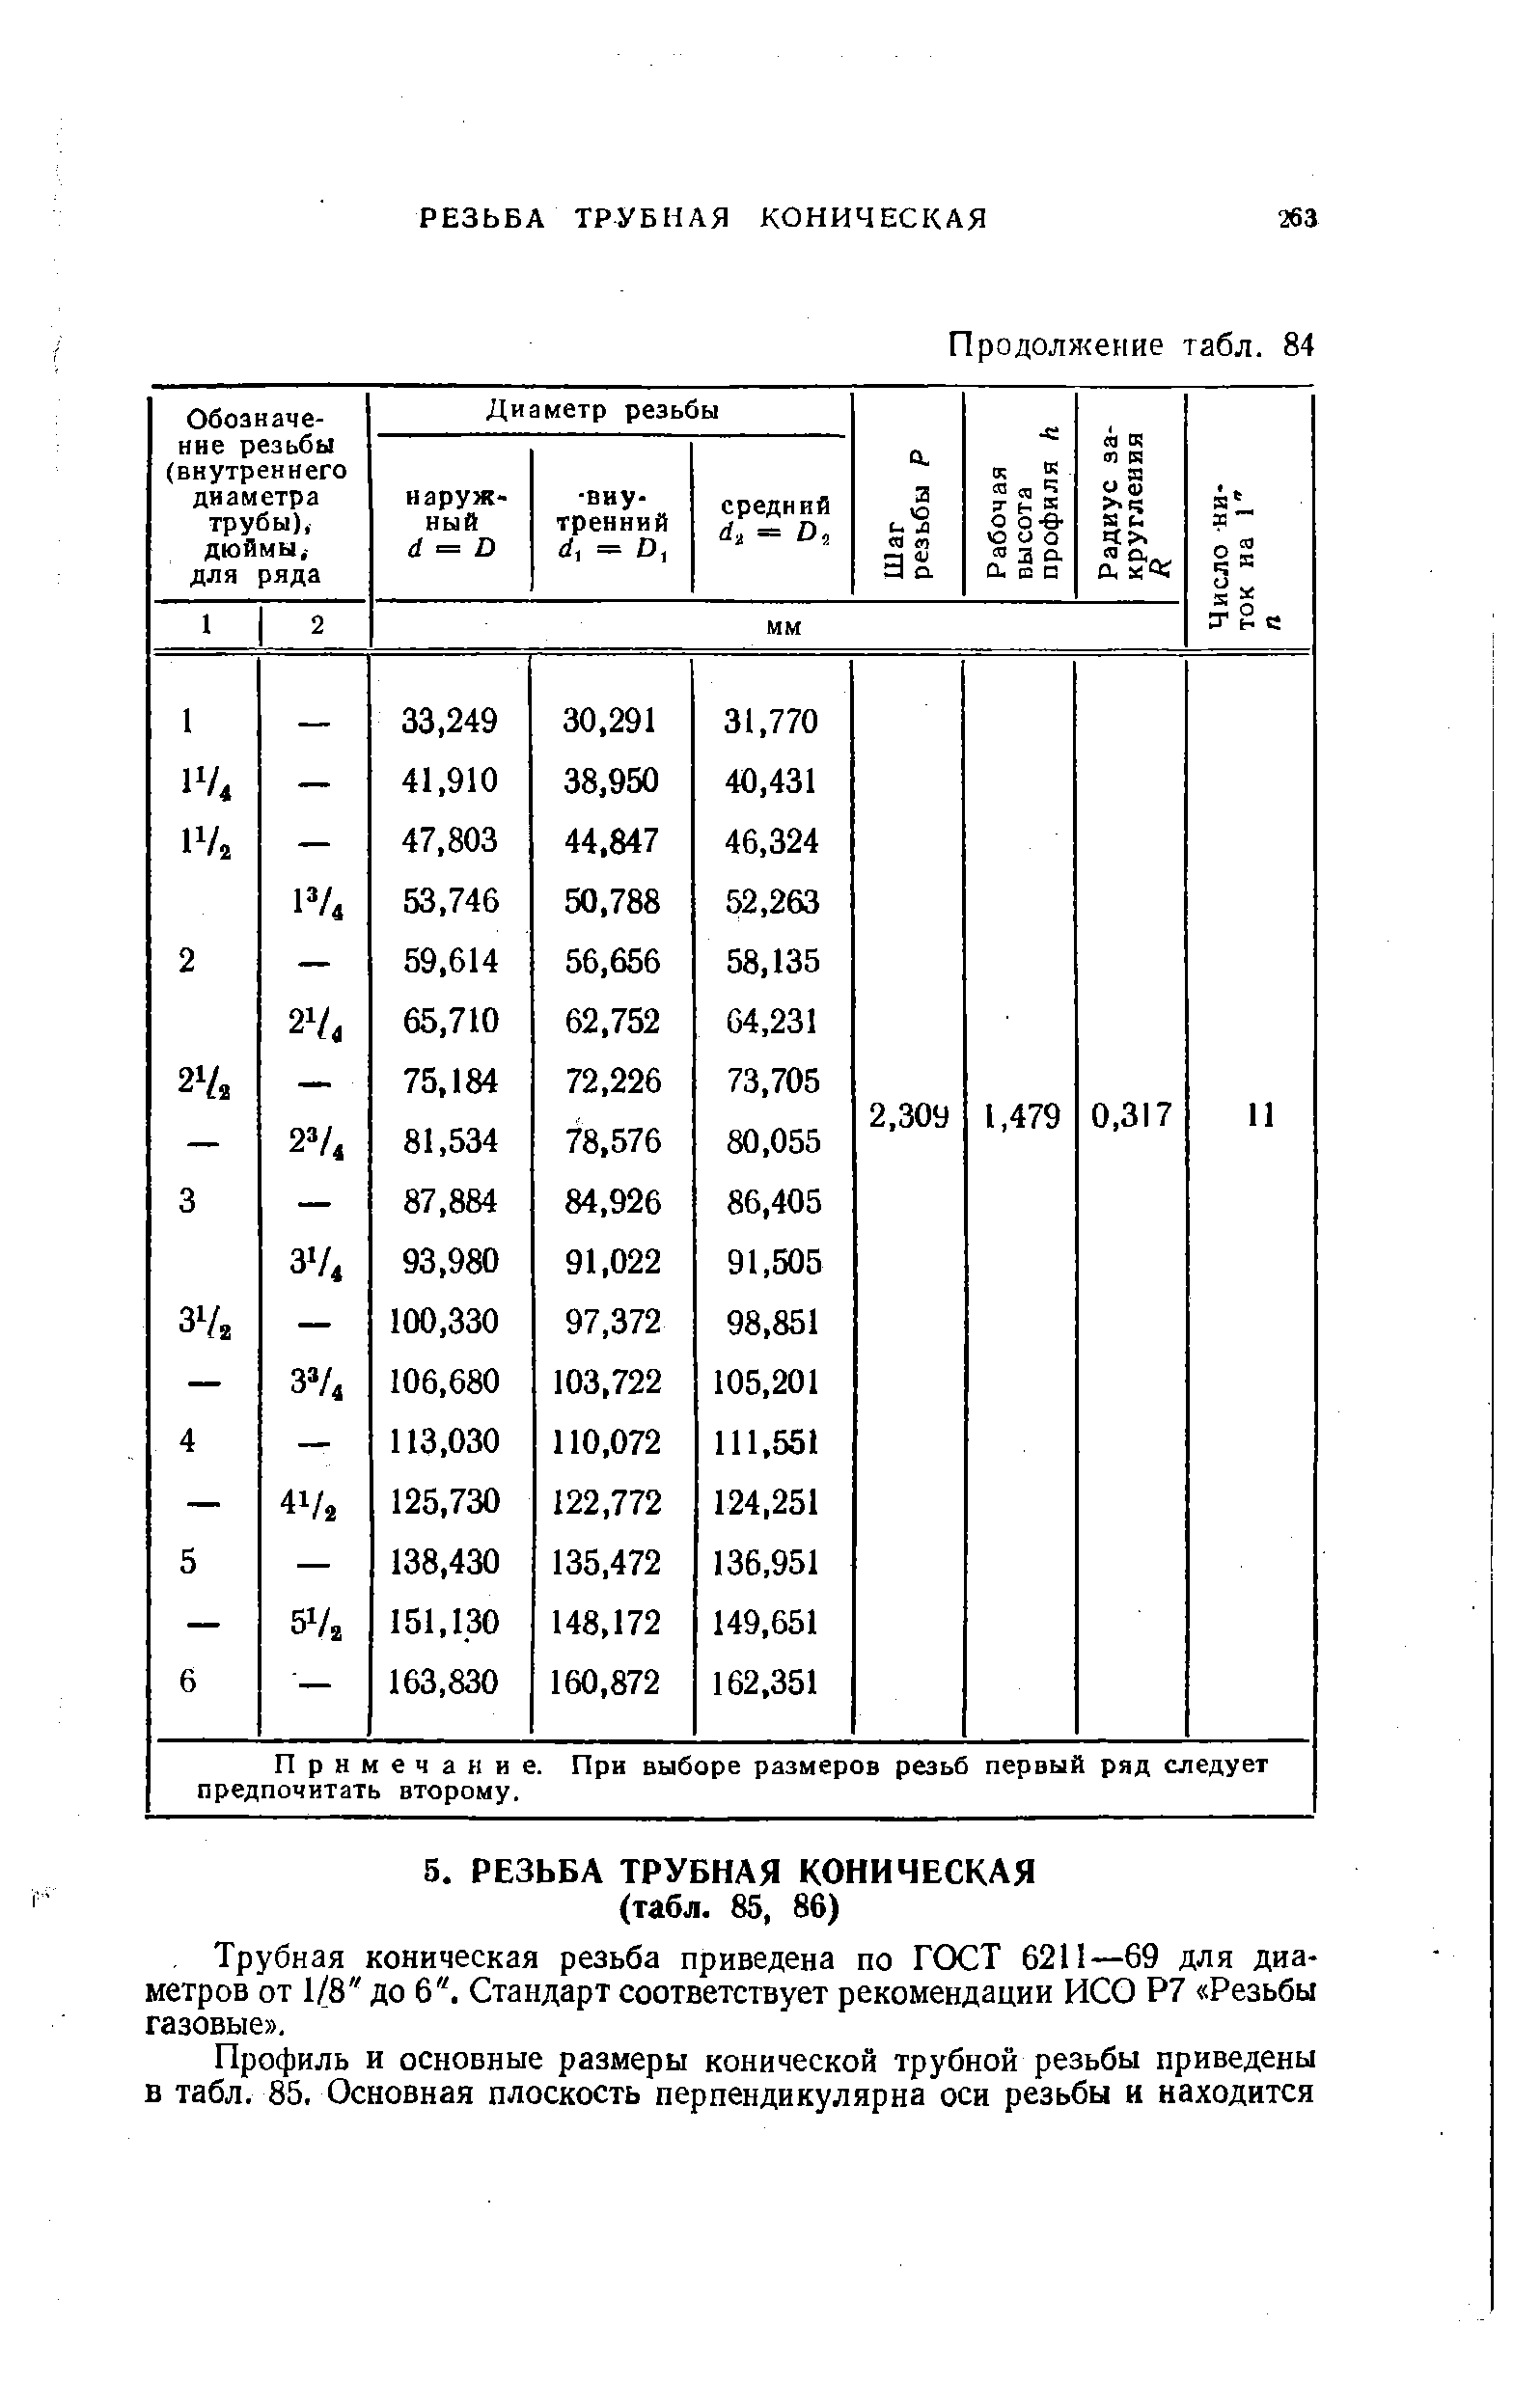 Трубная коническая резьба приведена по ГОСТ 6211—69 для диаметров от 1/8 до 6 . Стандарт соответствует рекомендации ИСО Р7 Резьбы газовые .
